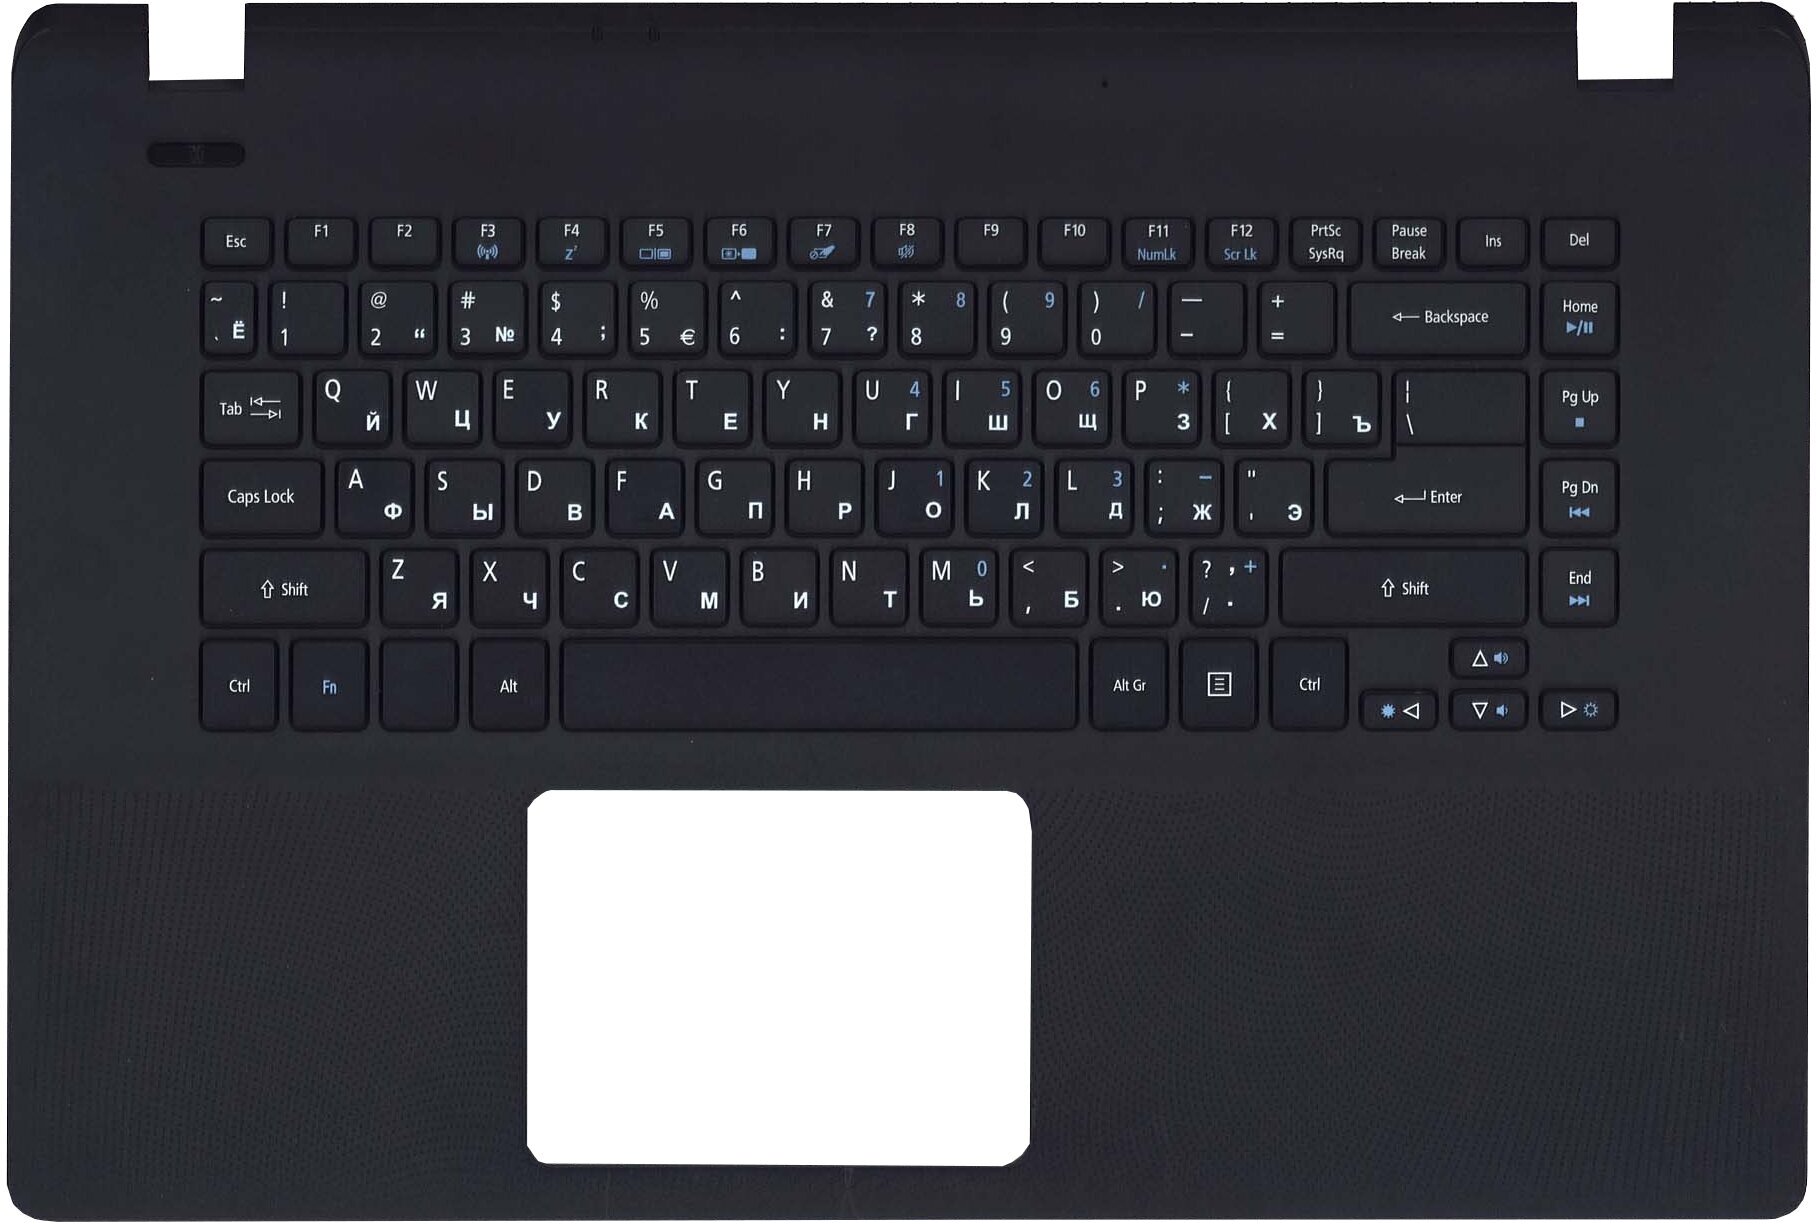 Клавиатура (топ-панель) для ноутбука Acer Aspire ES1-511 черная с черным топкейсом